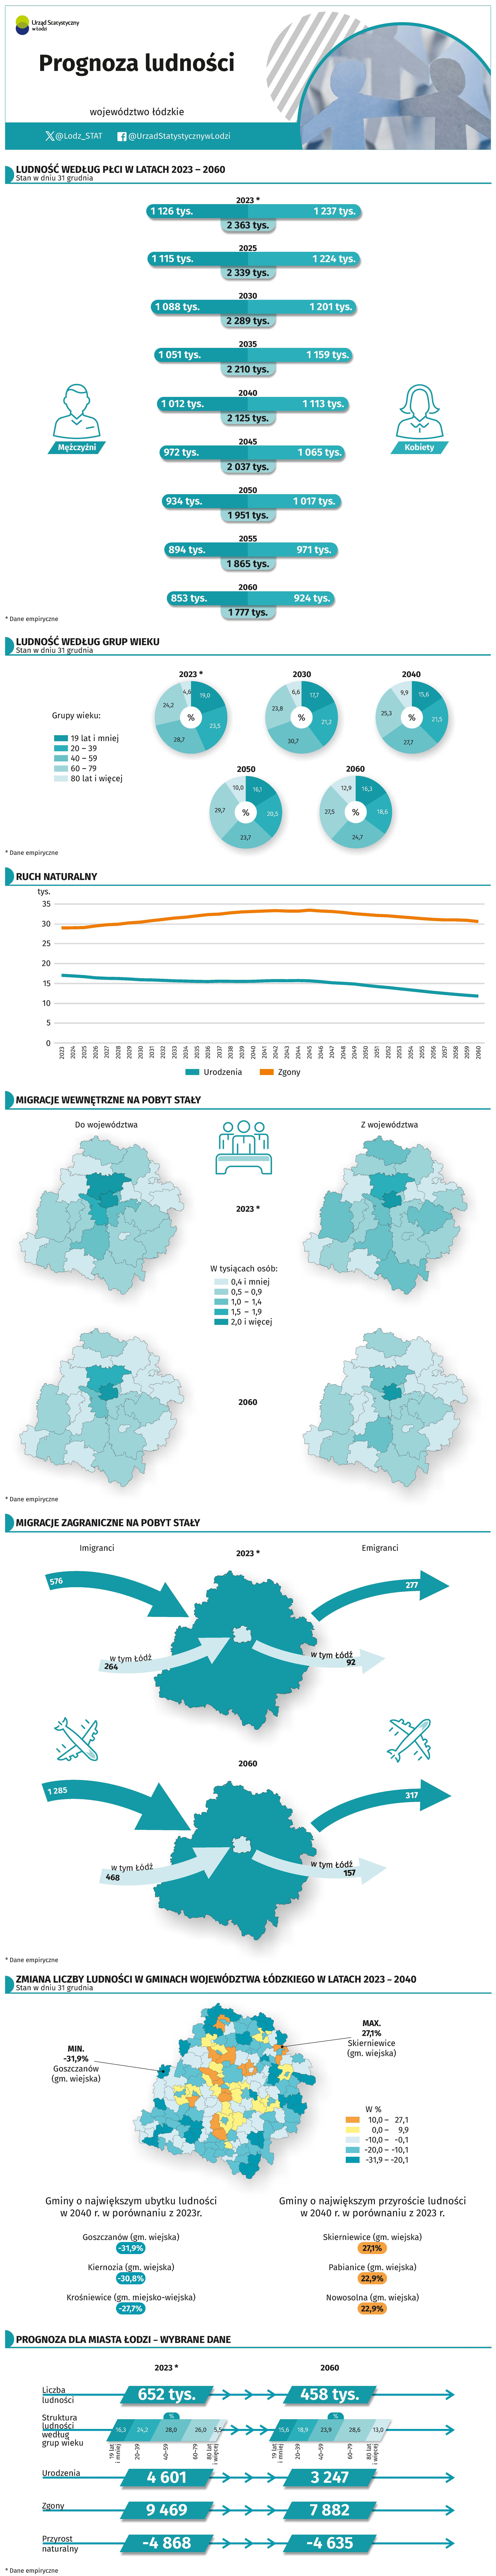 Infografika przedstawiająca prognozę ludności dla województwa łódzkiego